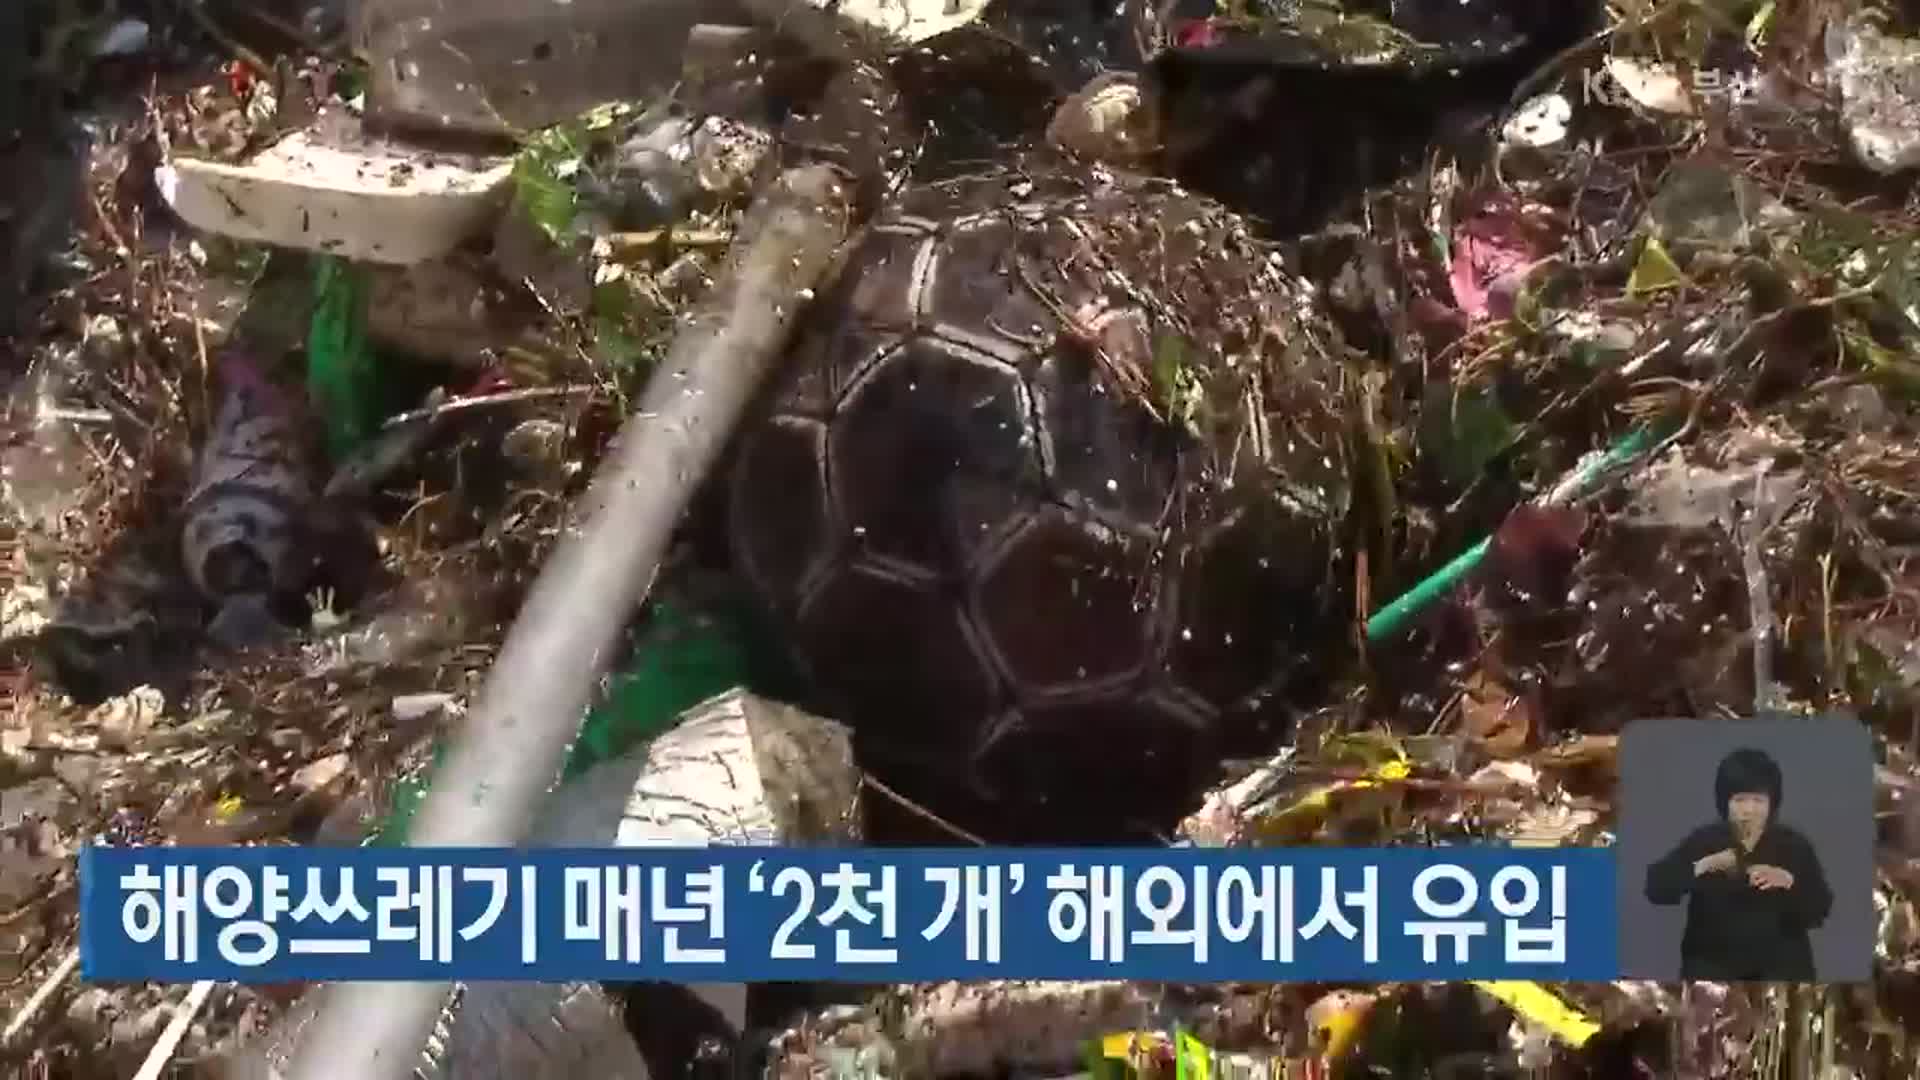 해양쓰레기 매년 ‘2천 개’ 해외에서 유입